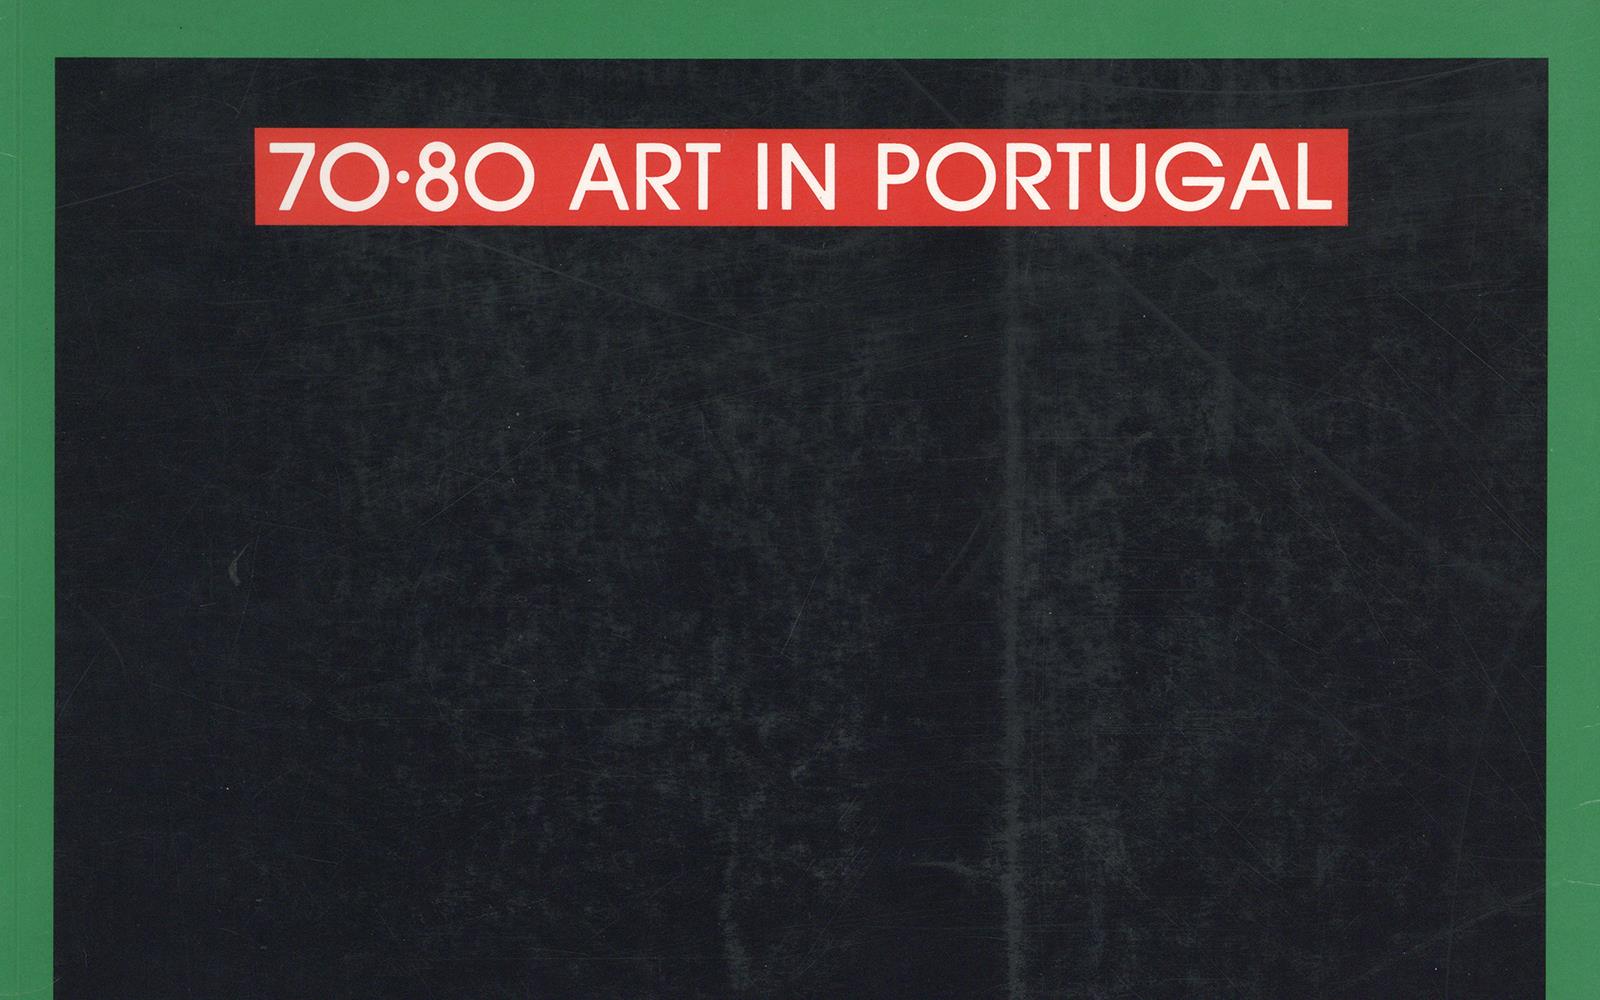 70 – 80 Arte Portuguesa